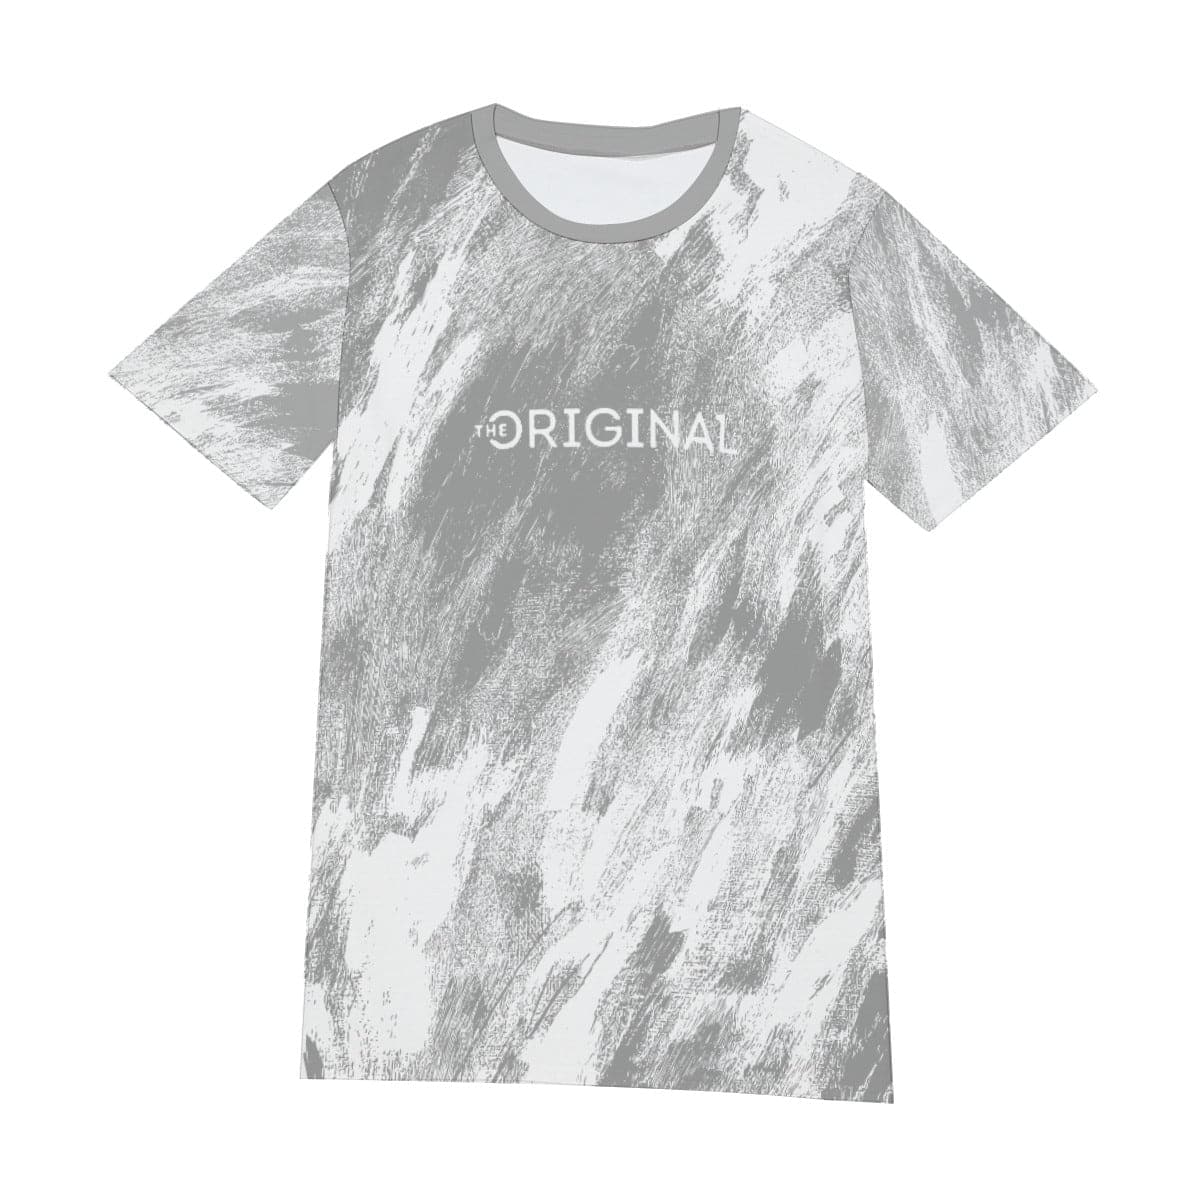 The Original One dream T-shirt White | The Original One